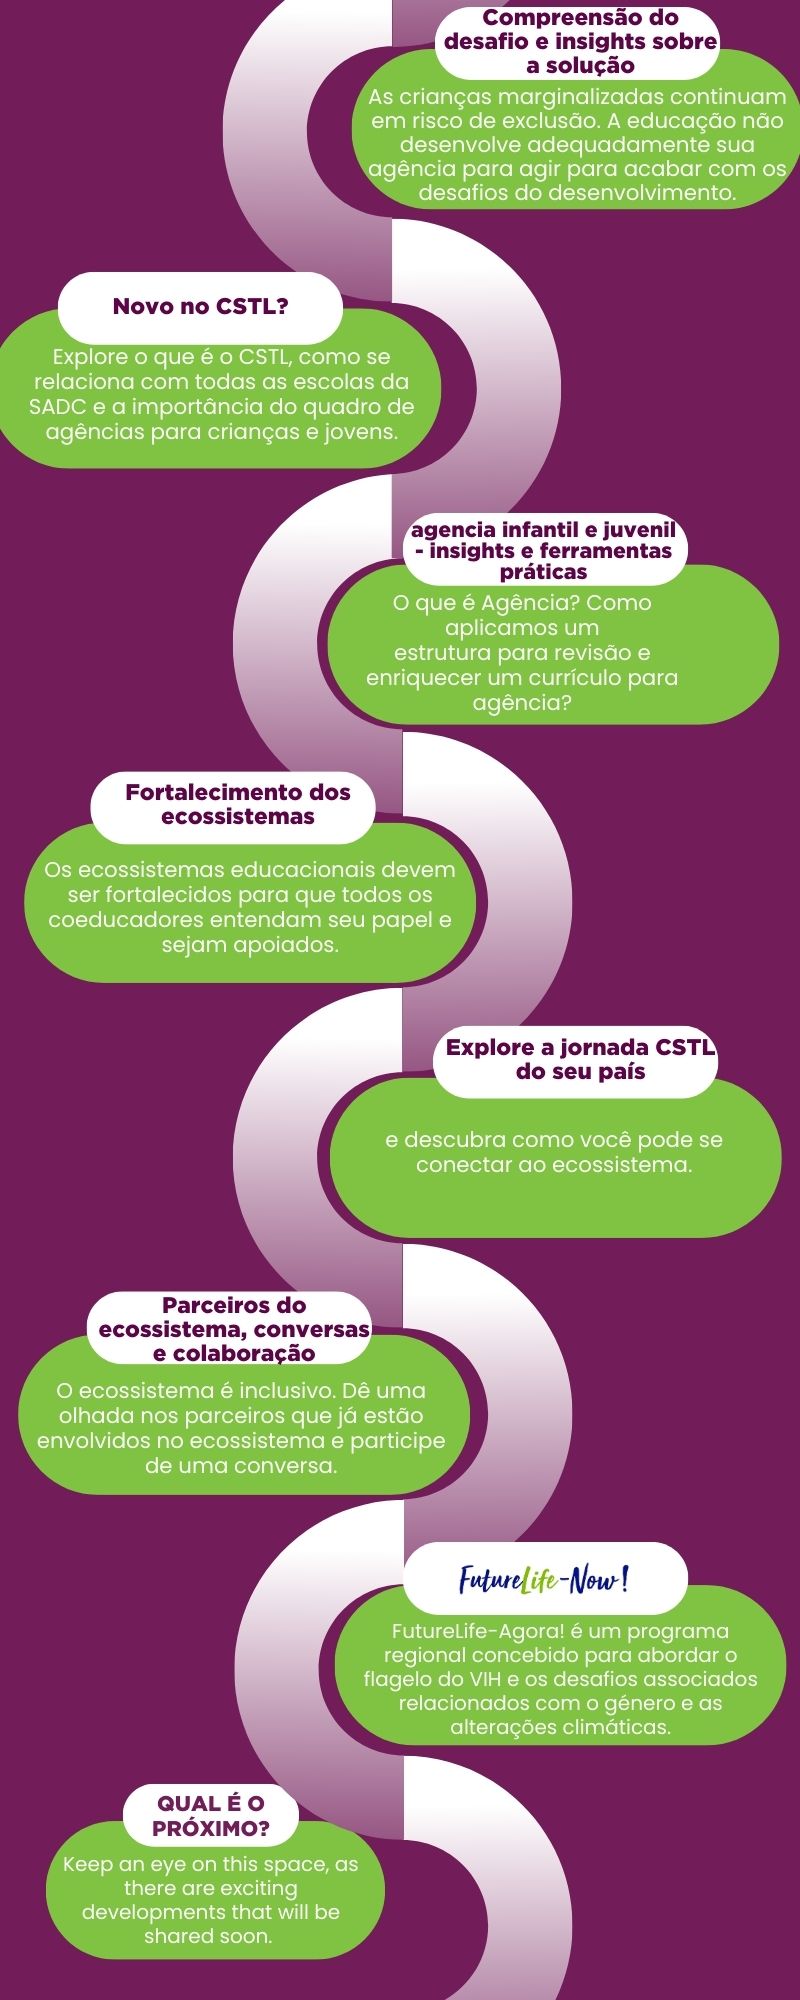 Portuguese CSTL roadmap.jpg